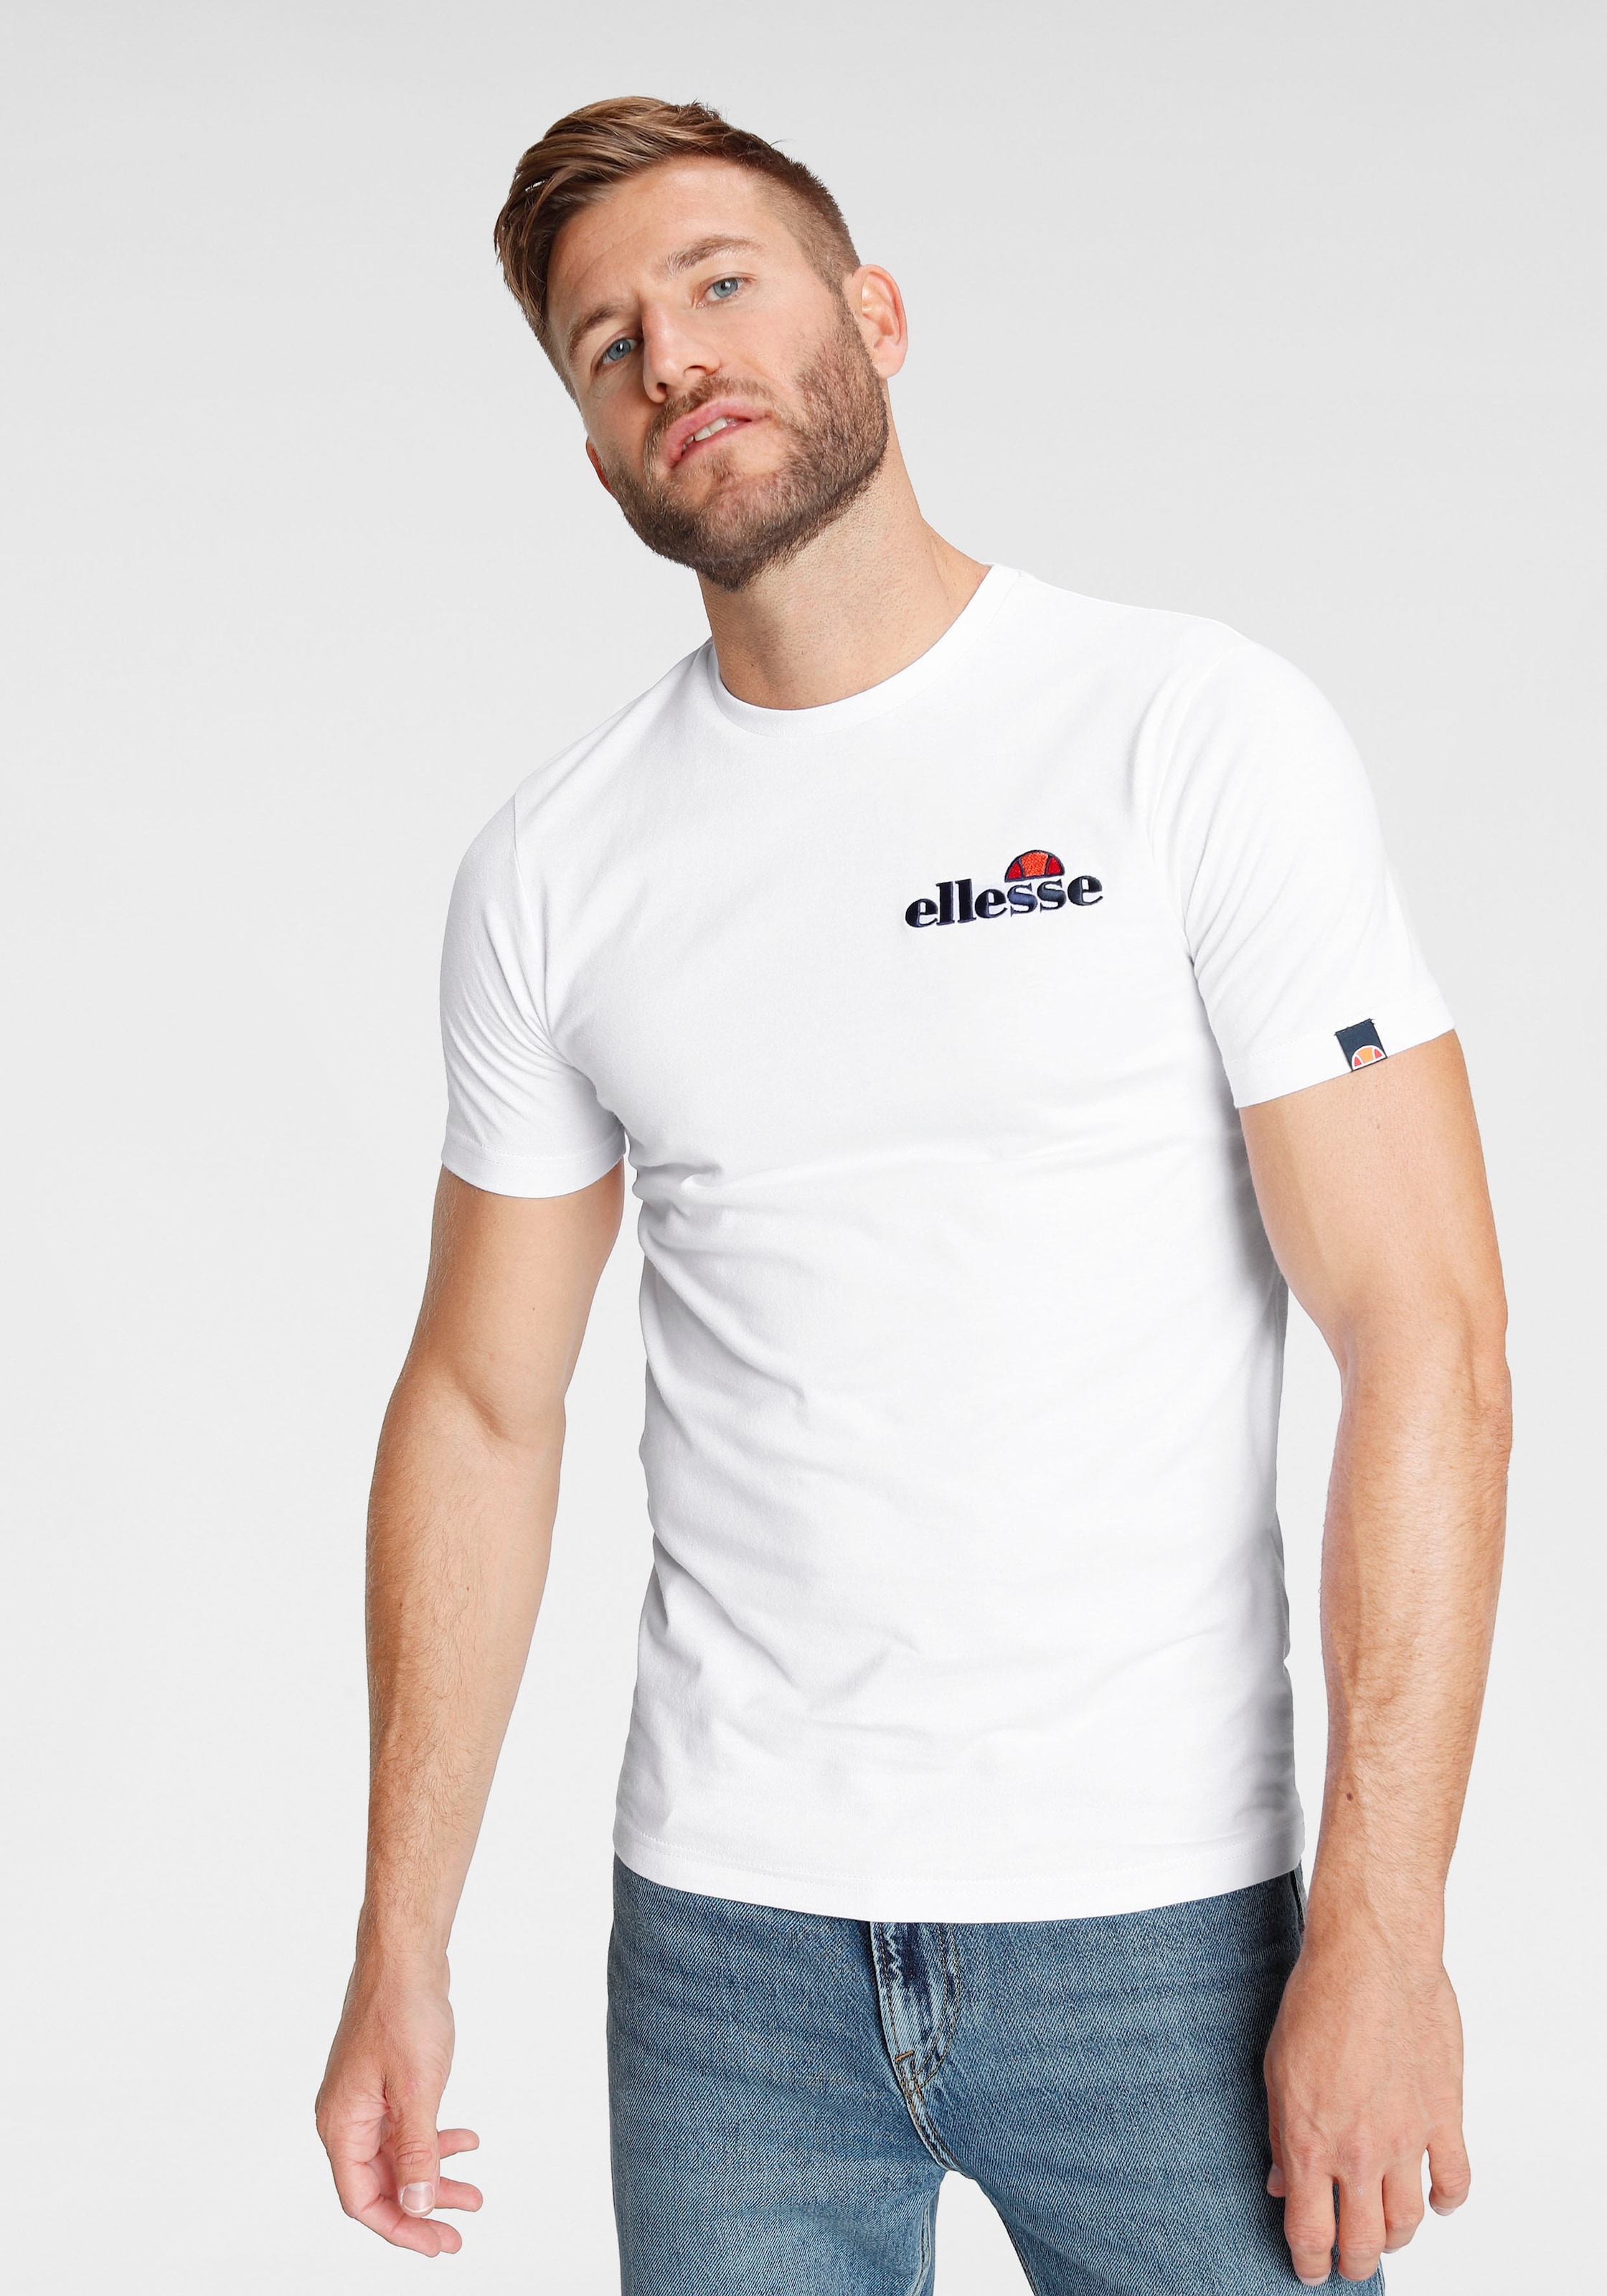 versandkostenfrei T-Shirts ➤ bestellen